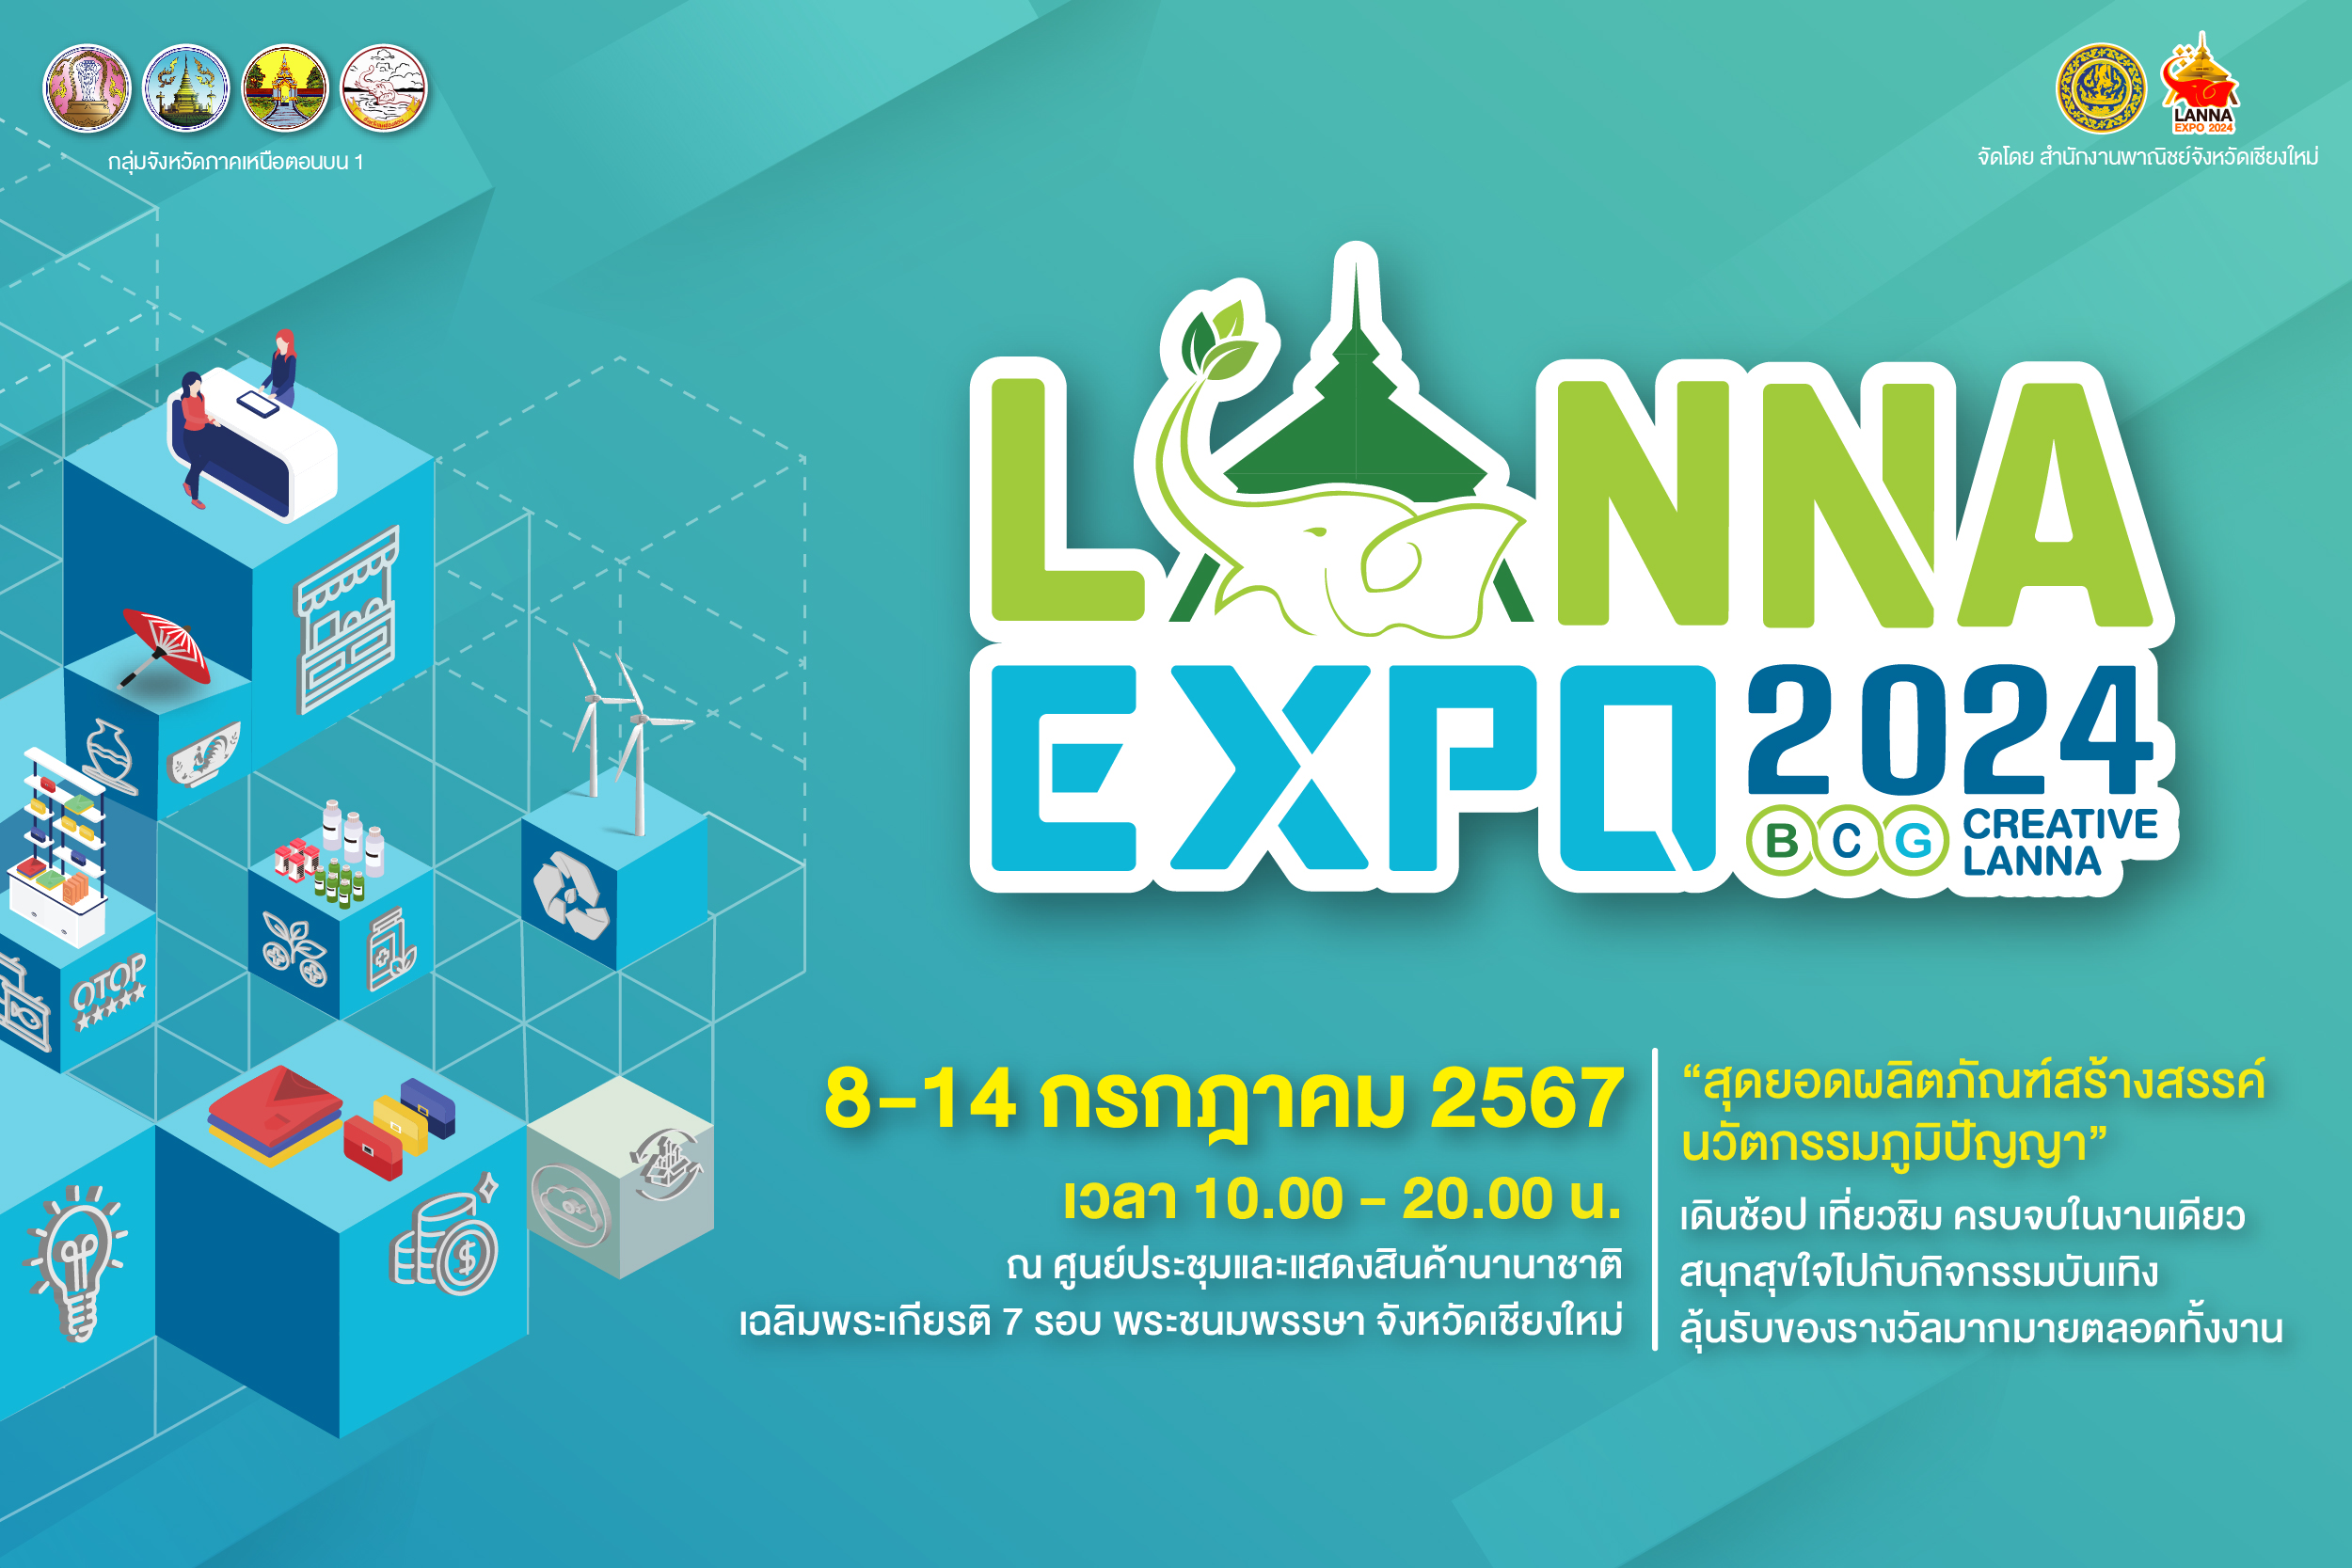 เบญจคุณออกงาน งานสุดยิ่งใหญ่ของภาคเหนือ Lanna expo 2024 “BCG Creative Lanna”